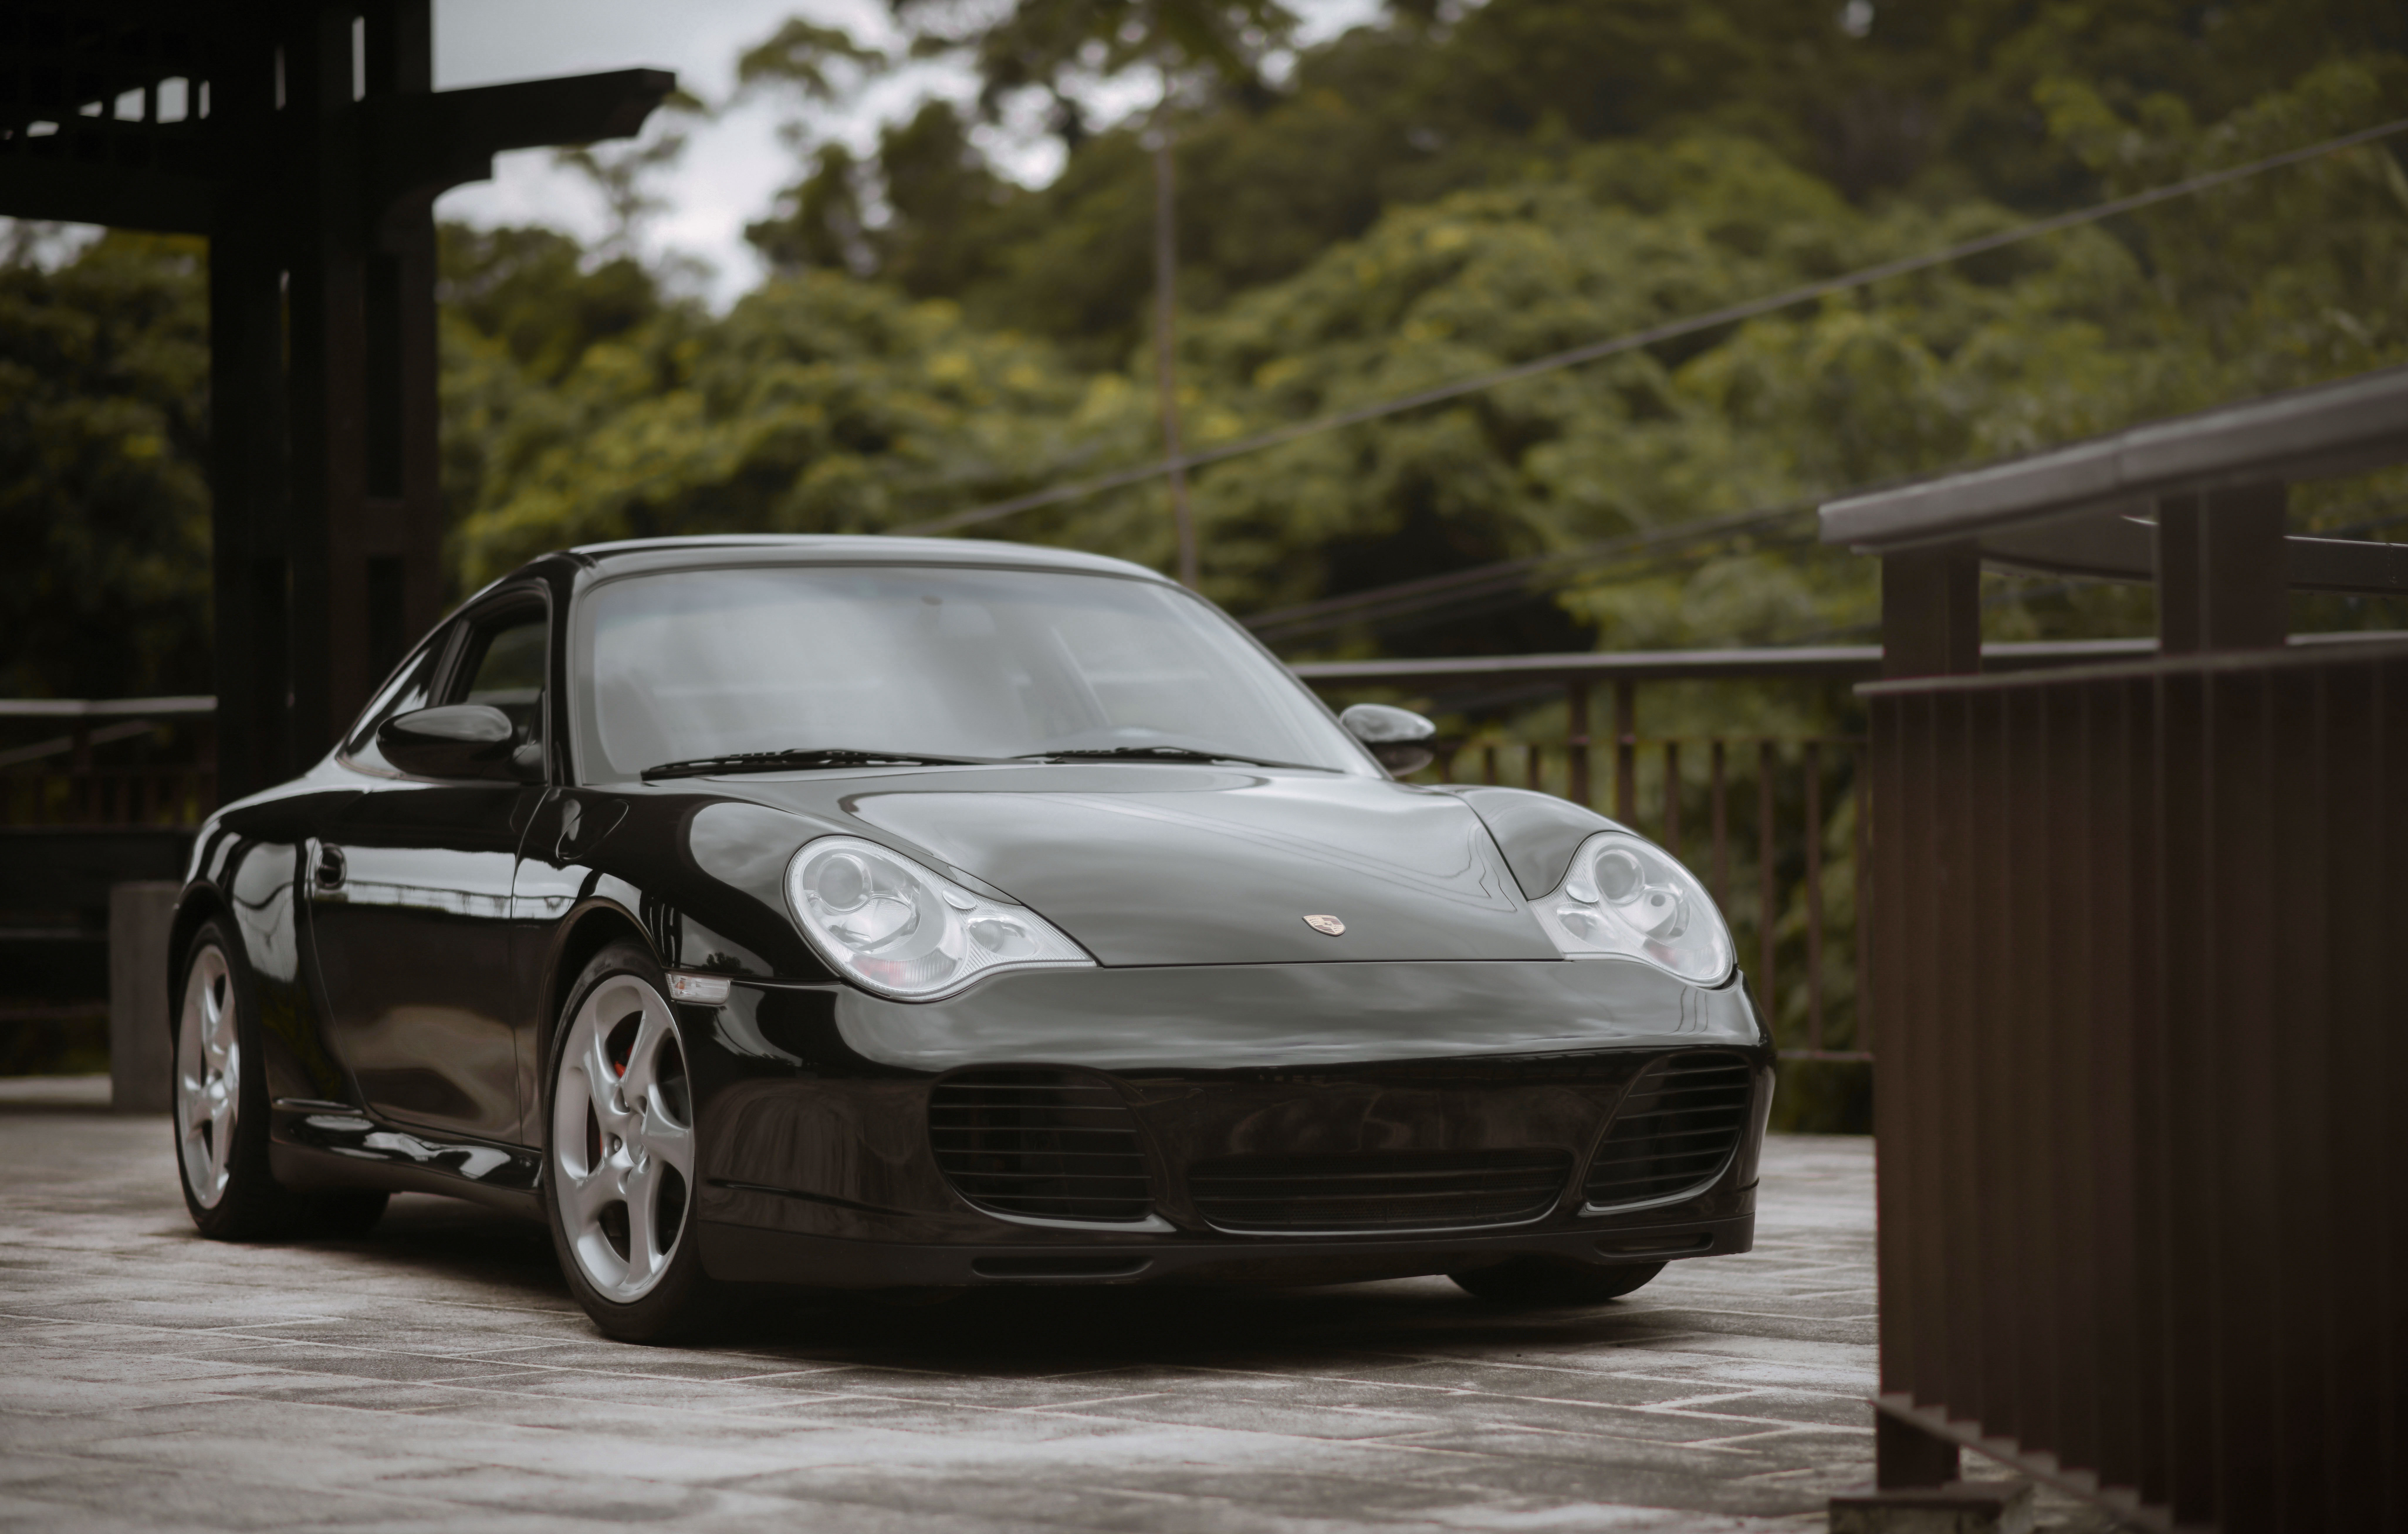 Скачать обои Porsche 911 Carrera 4S на телефон бесплатно